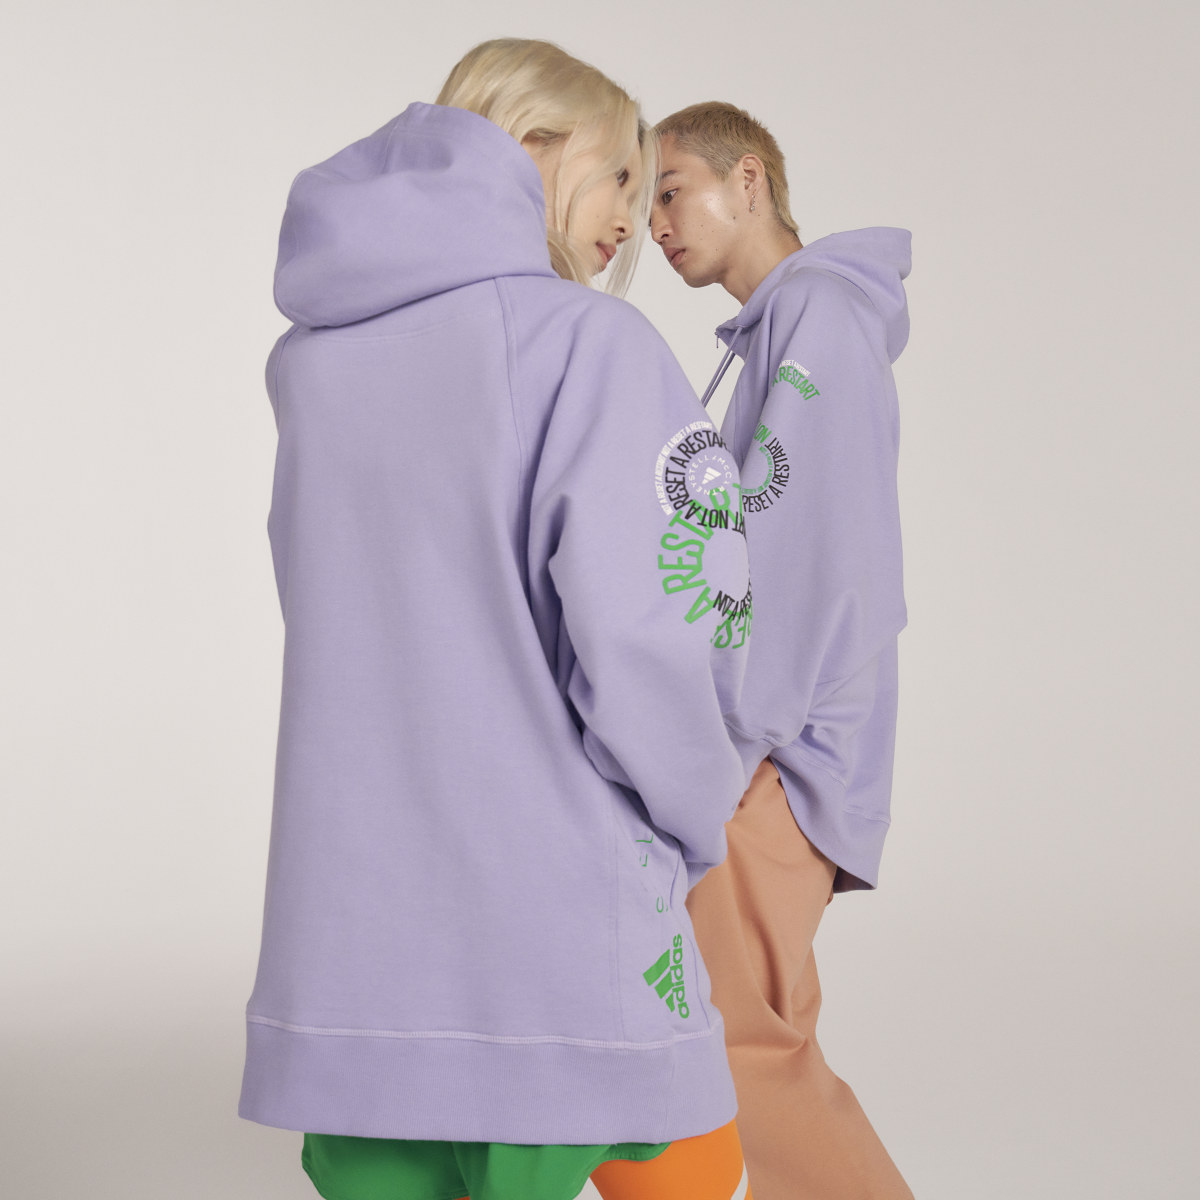 Adidas by Stella McCartney Pull On - Gender Neutral. 4